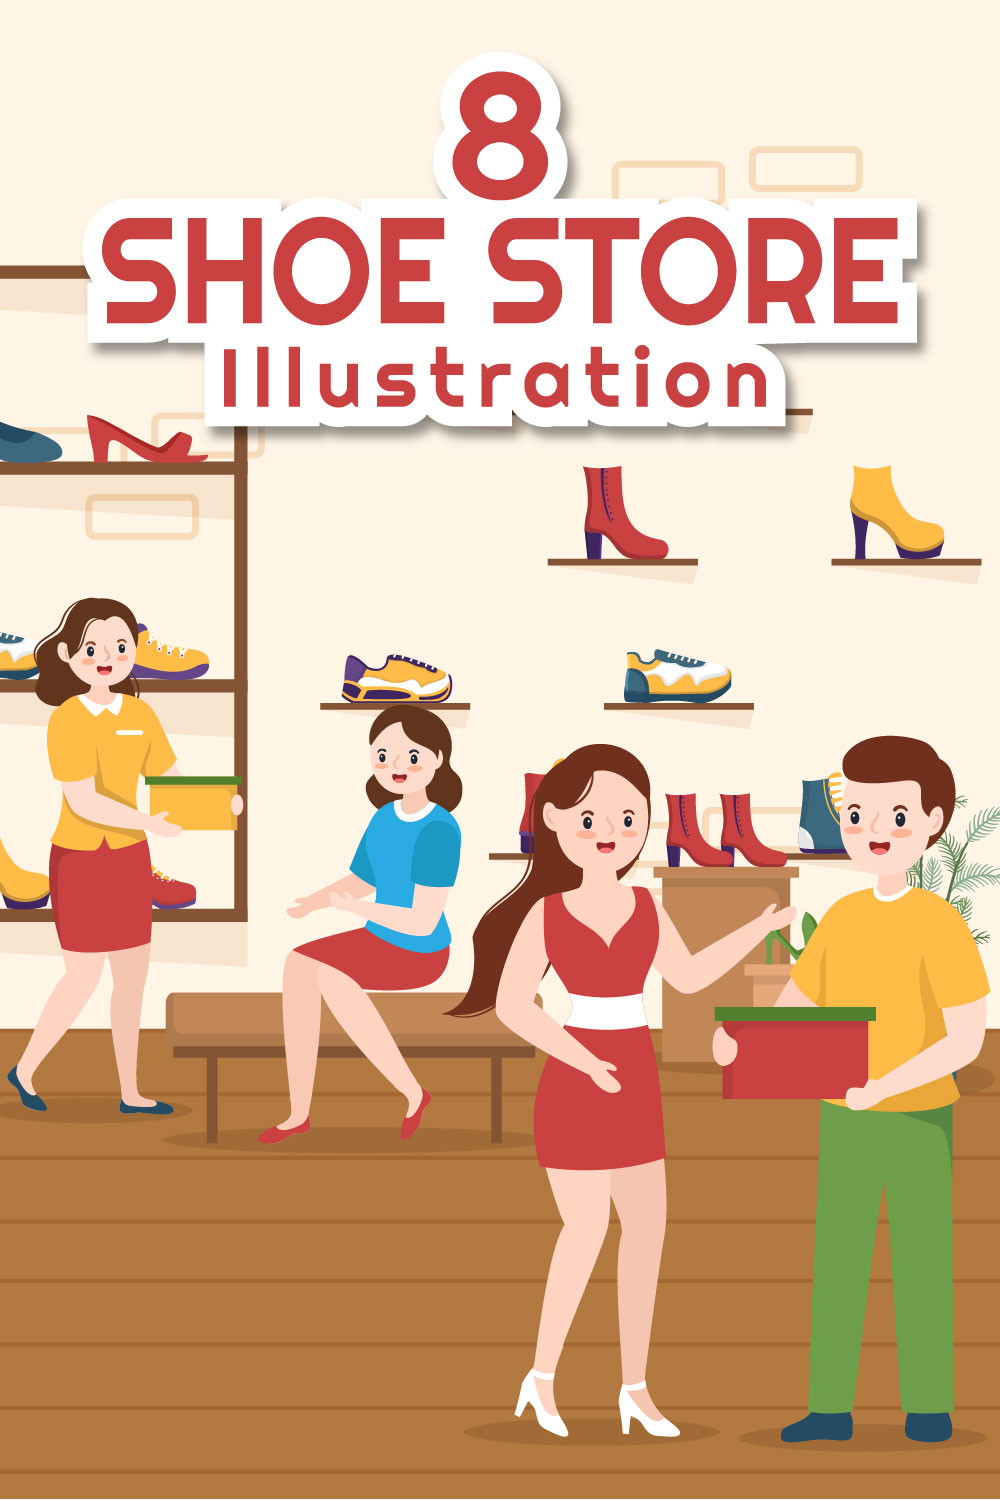 Shoe Store Flat Illustration pinterest image.